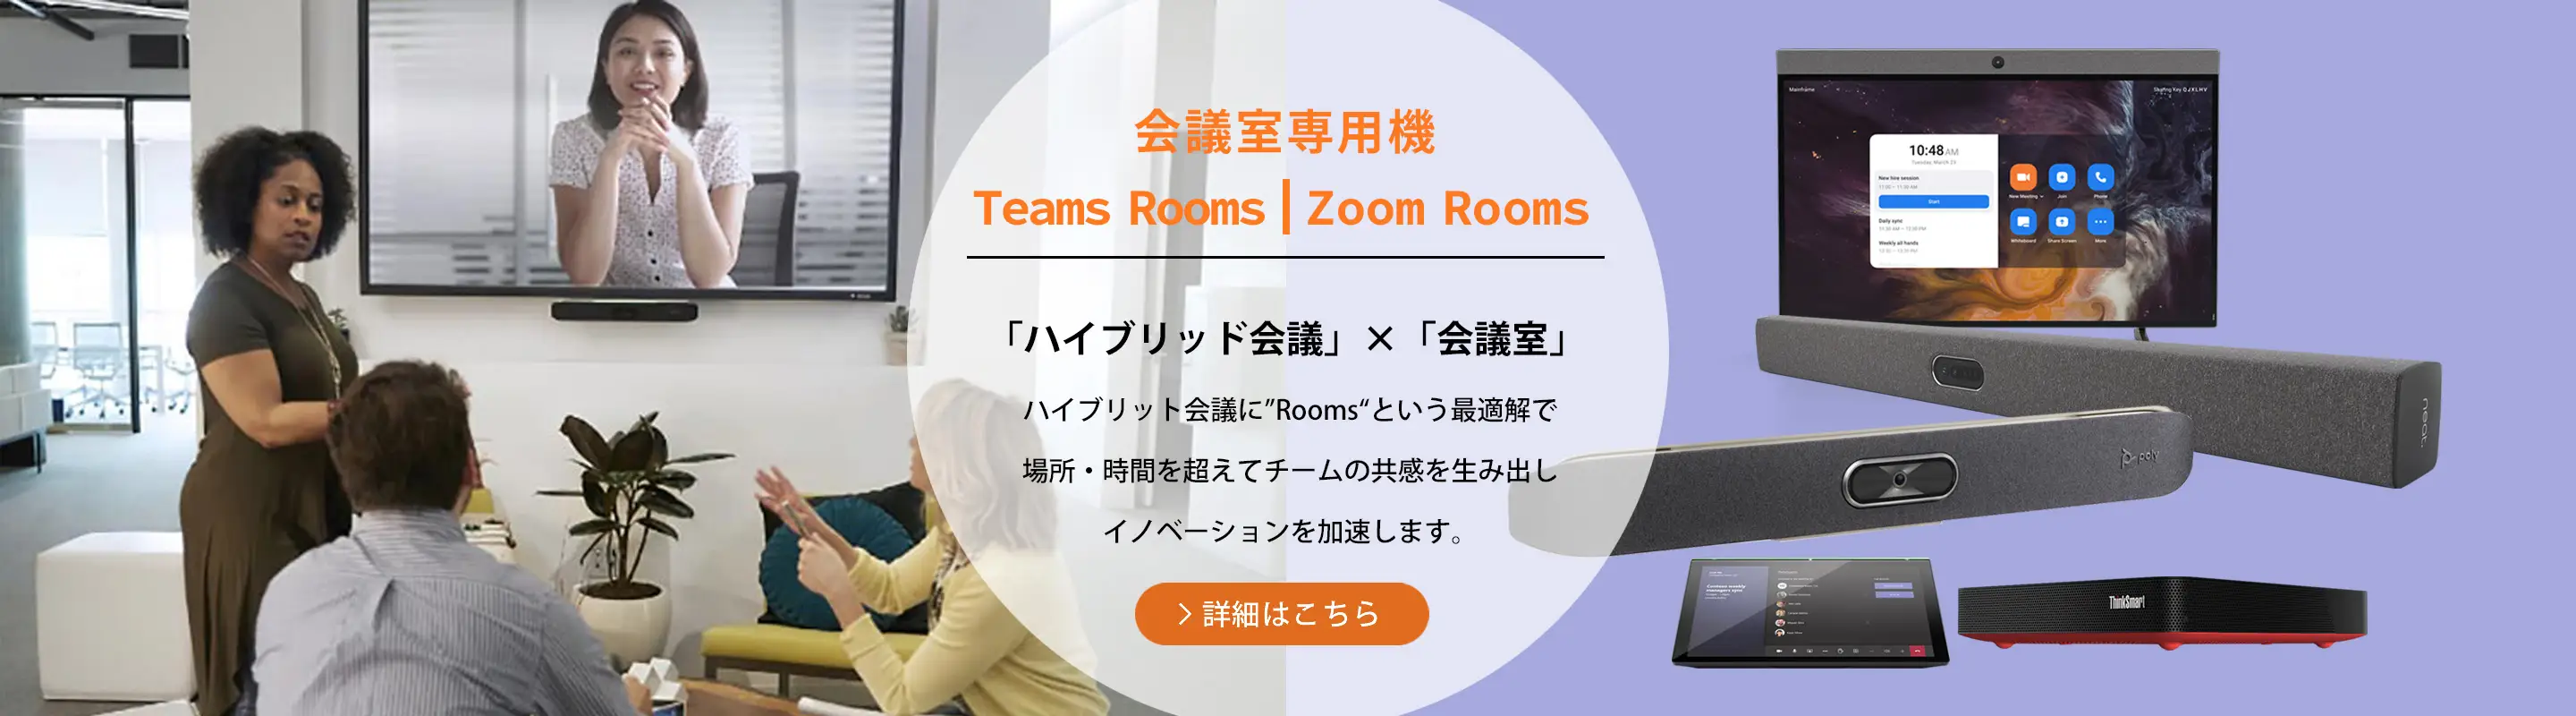 ハイブリット会議に最適な会議室専用機Teams Rooms/Zoom Rooms